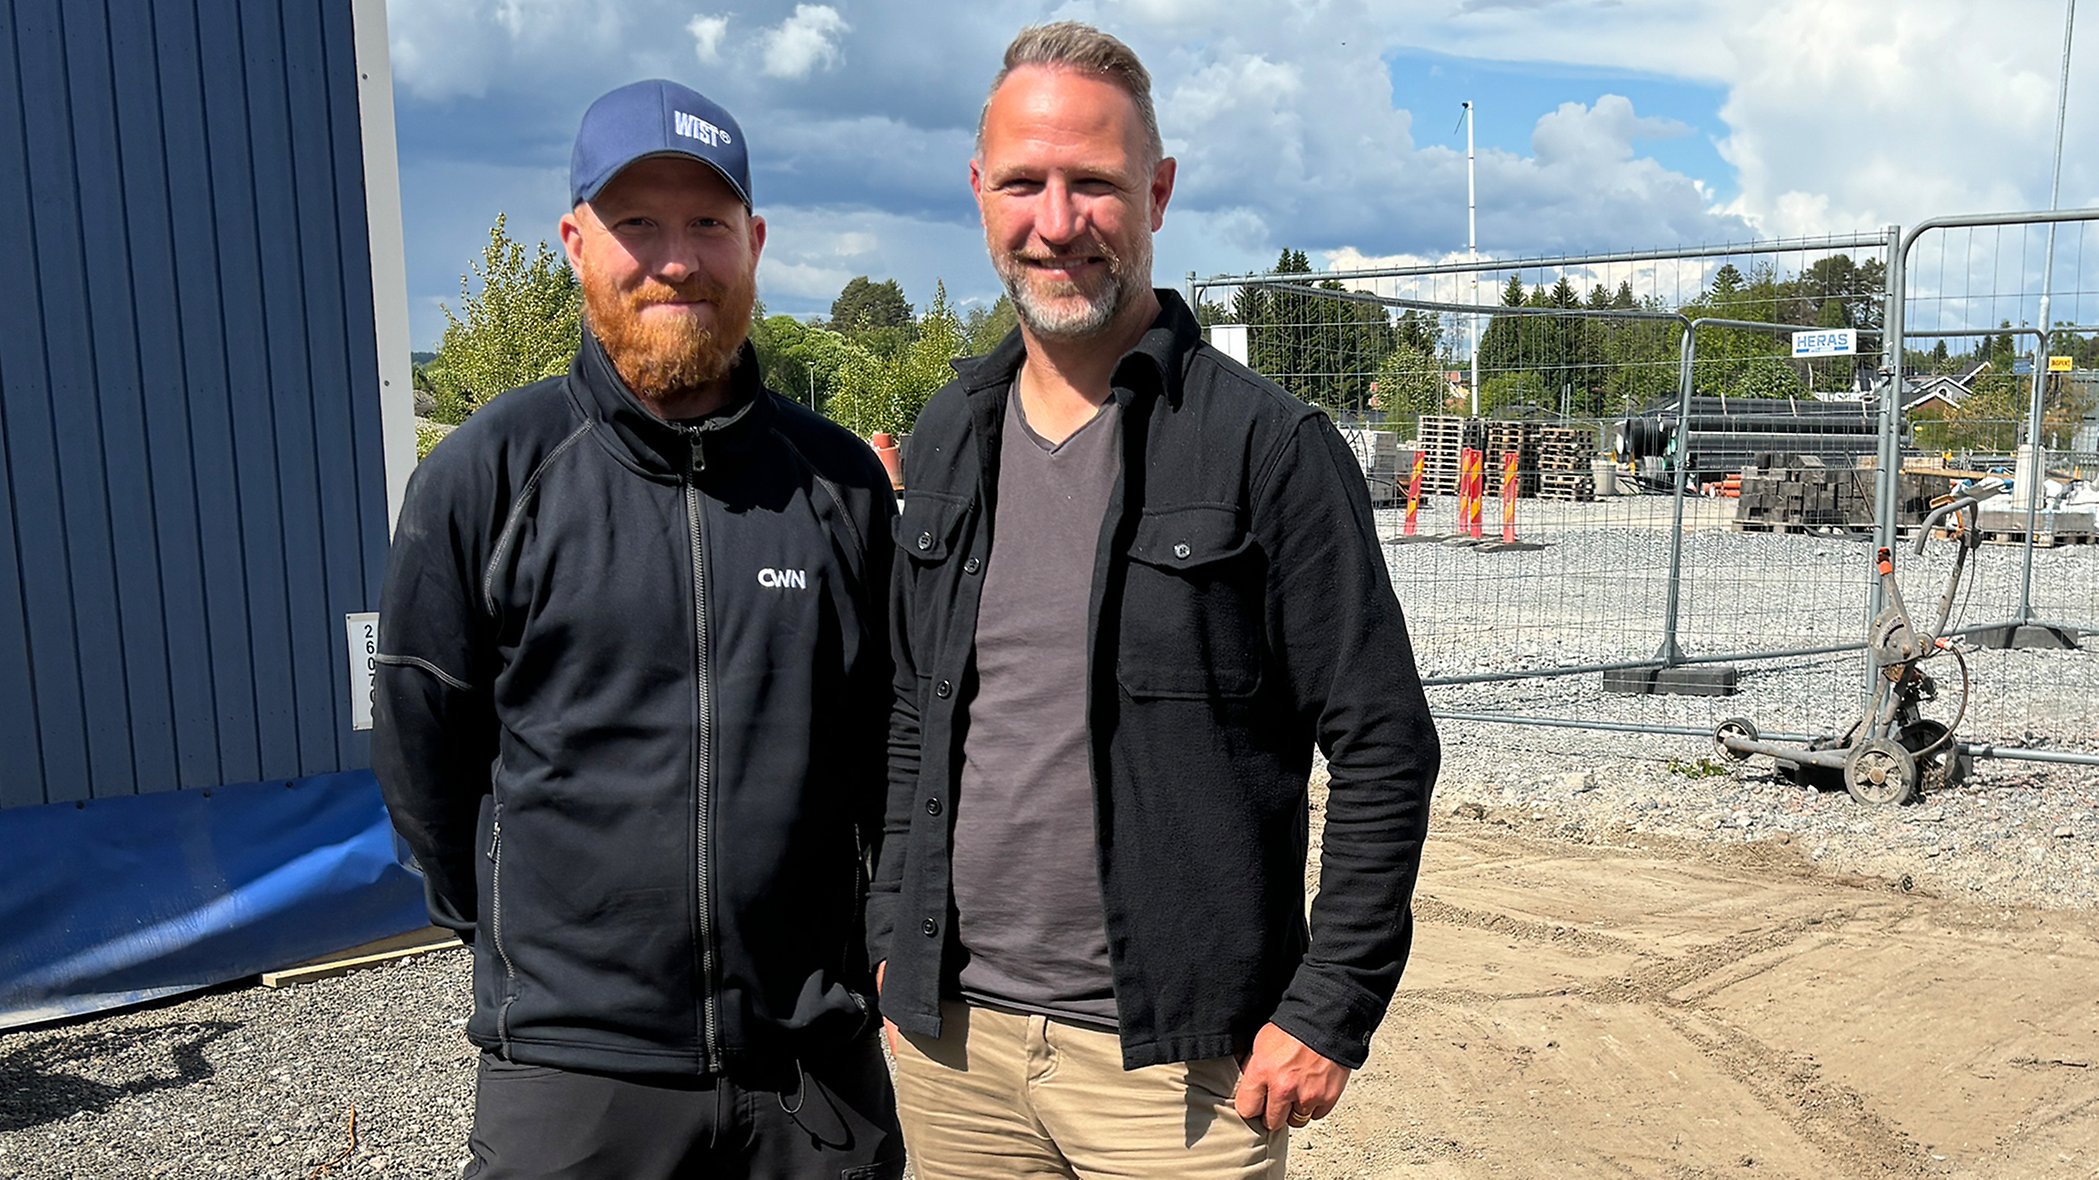 – Lagom i tid till invigningsdagen river vi stängslet runt Origoparken och öppnar området för allmänheten, säger Hans-Erik Hedlund, platschef CWN, här tillsammans med kollegan och arbetsledare Joakim Nilsson.